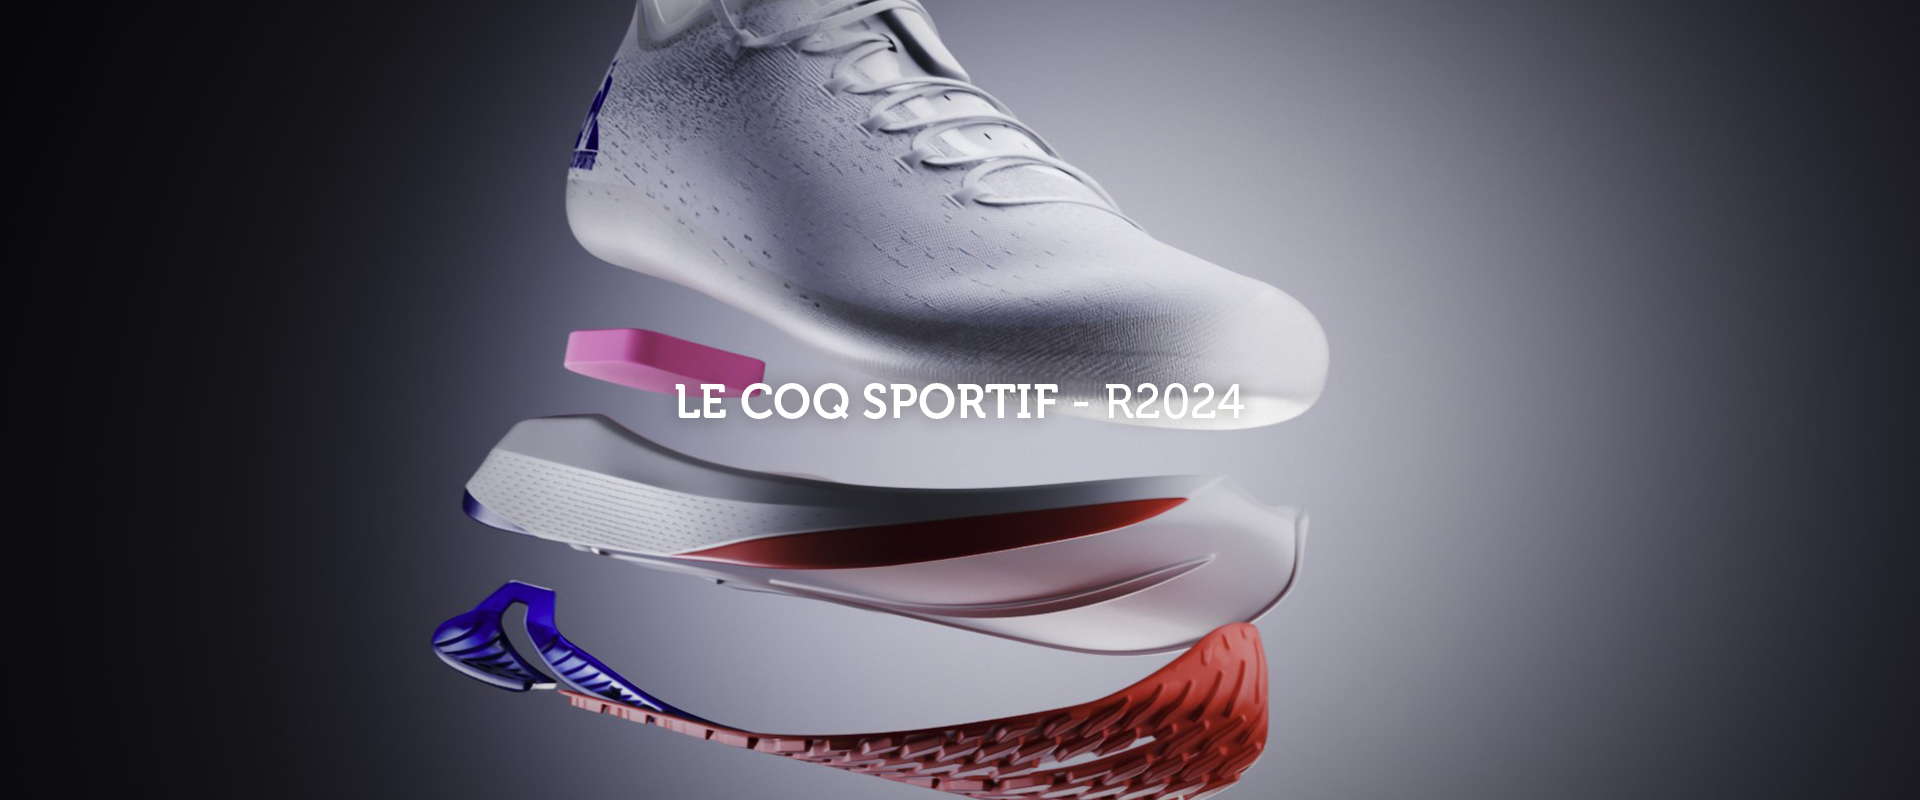 Le Coq Sportif – R2024